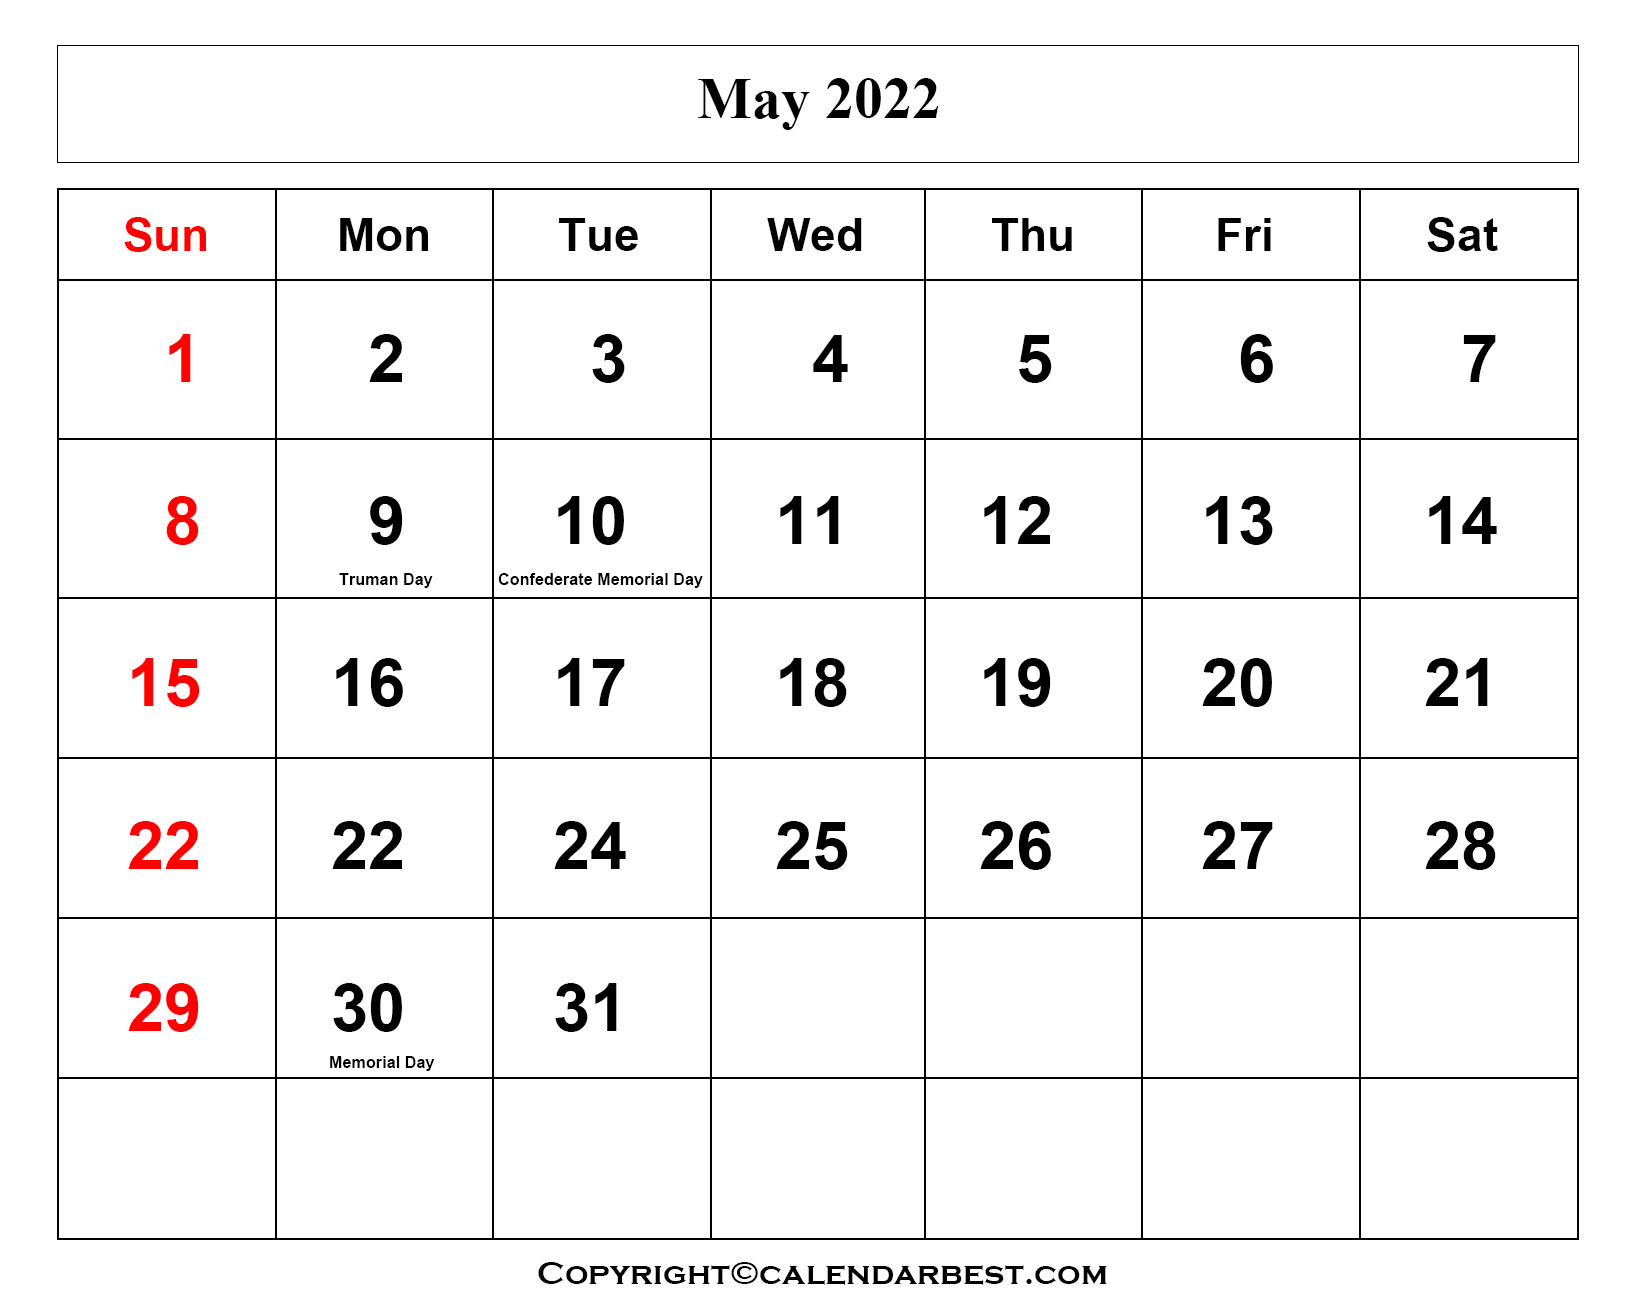 May Calendar 2022 With Holidays Free Printable May Calendar 2022 With Holidays In Pdf